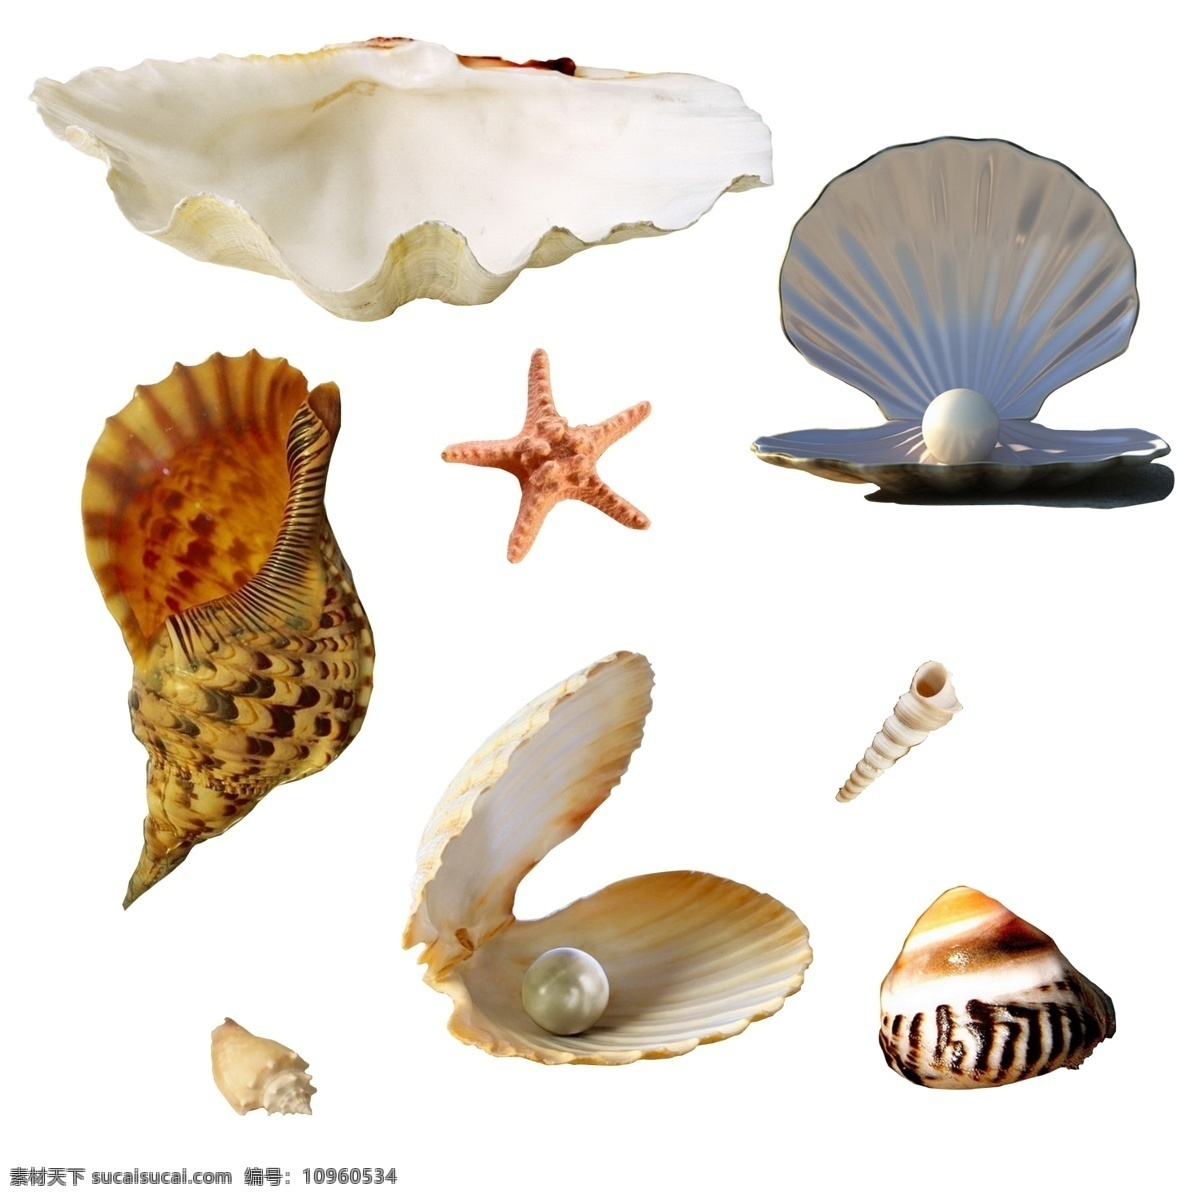 贝壳 珍珠 扇贝 蜗牛 海星 漂亮 分层素材 生物世界 海洋生物